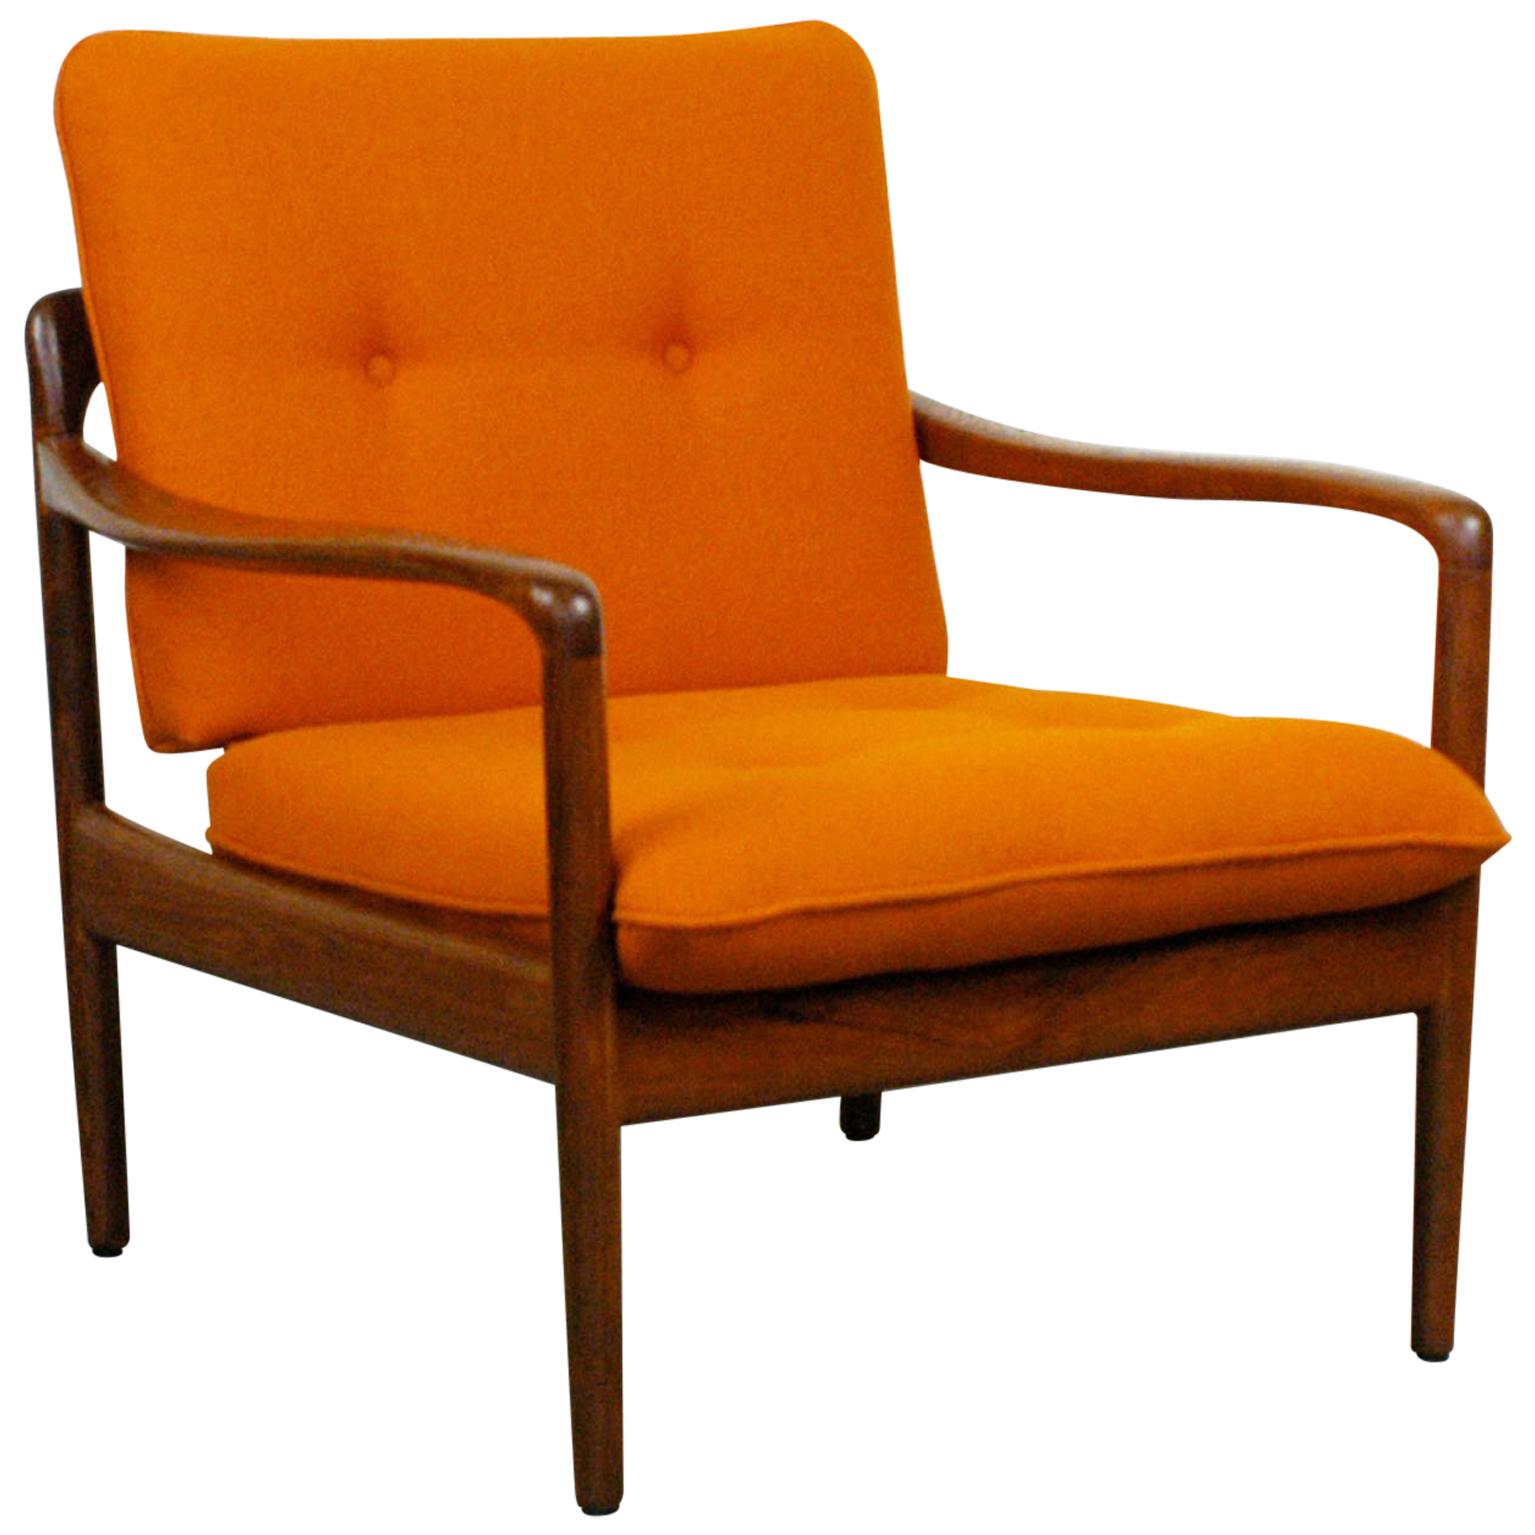 Midcentury Orange Teak Easy Chair by Knoll Antimott, Germany